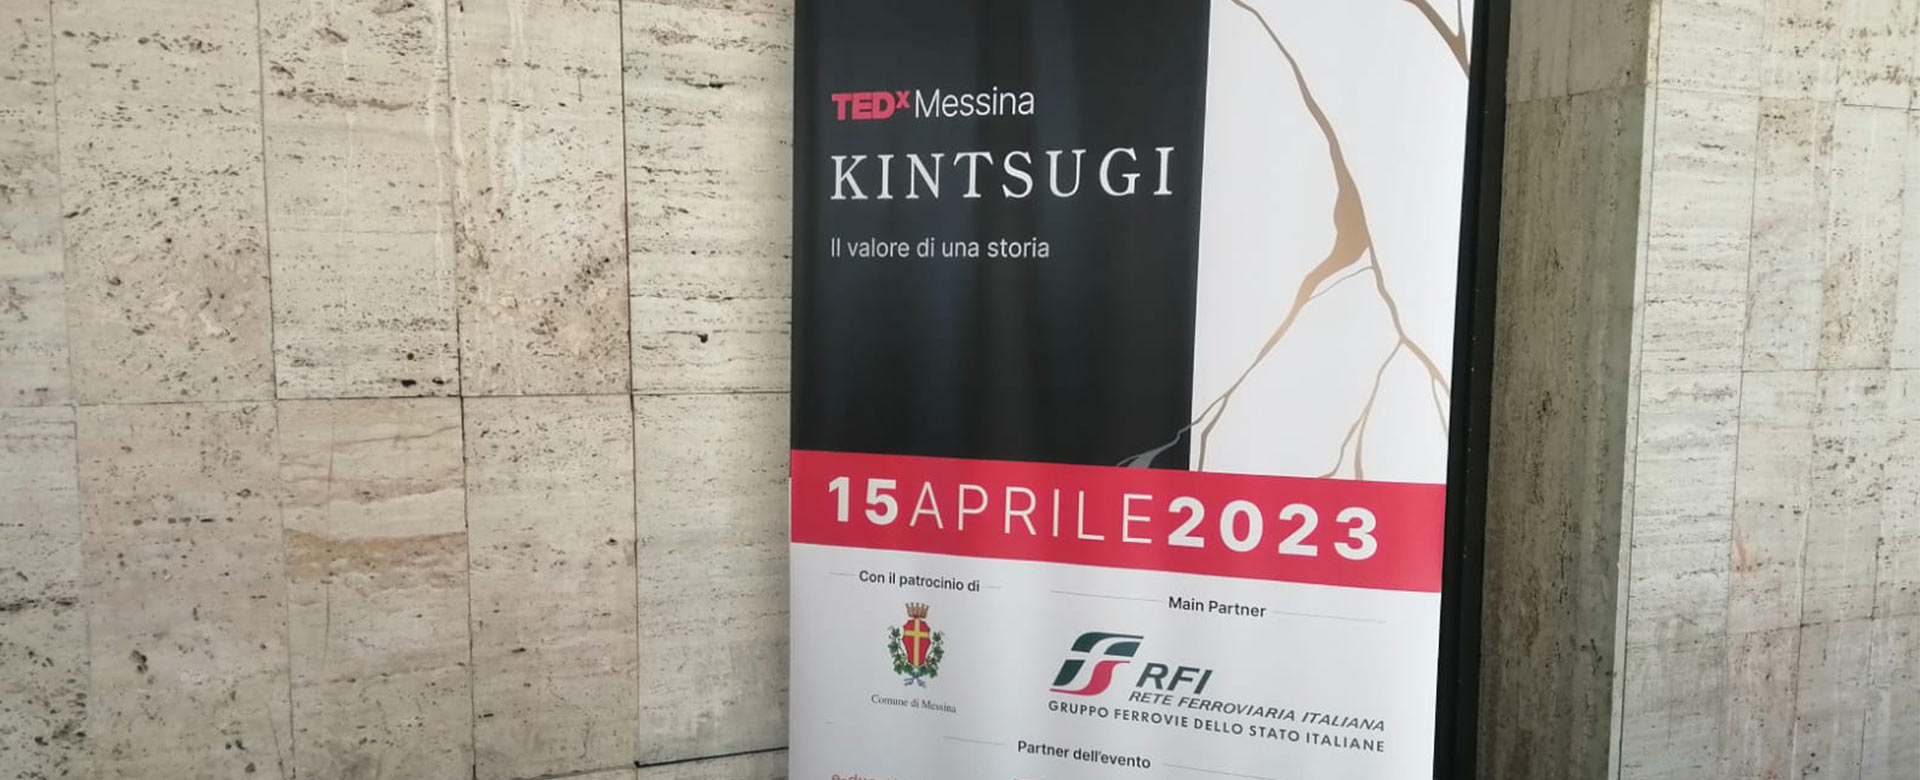 TEDx Messina 2023